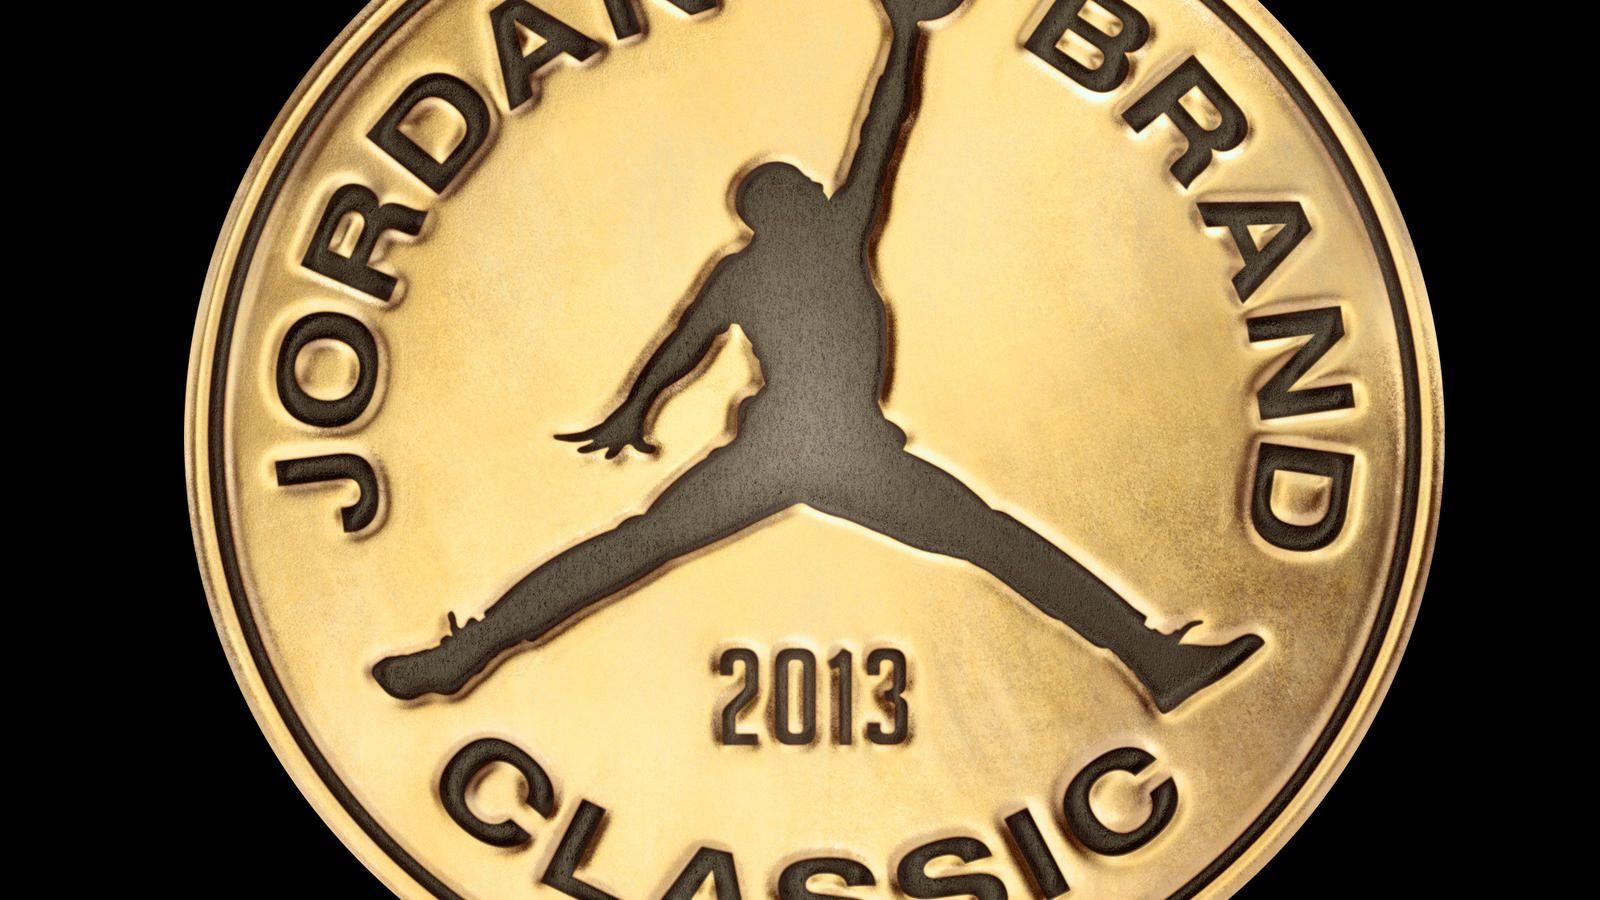 Gold Jordan Logo - Jordan Brand Reveals On Court Collection For The 2013 Jordan Brand